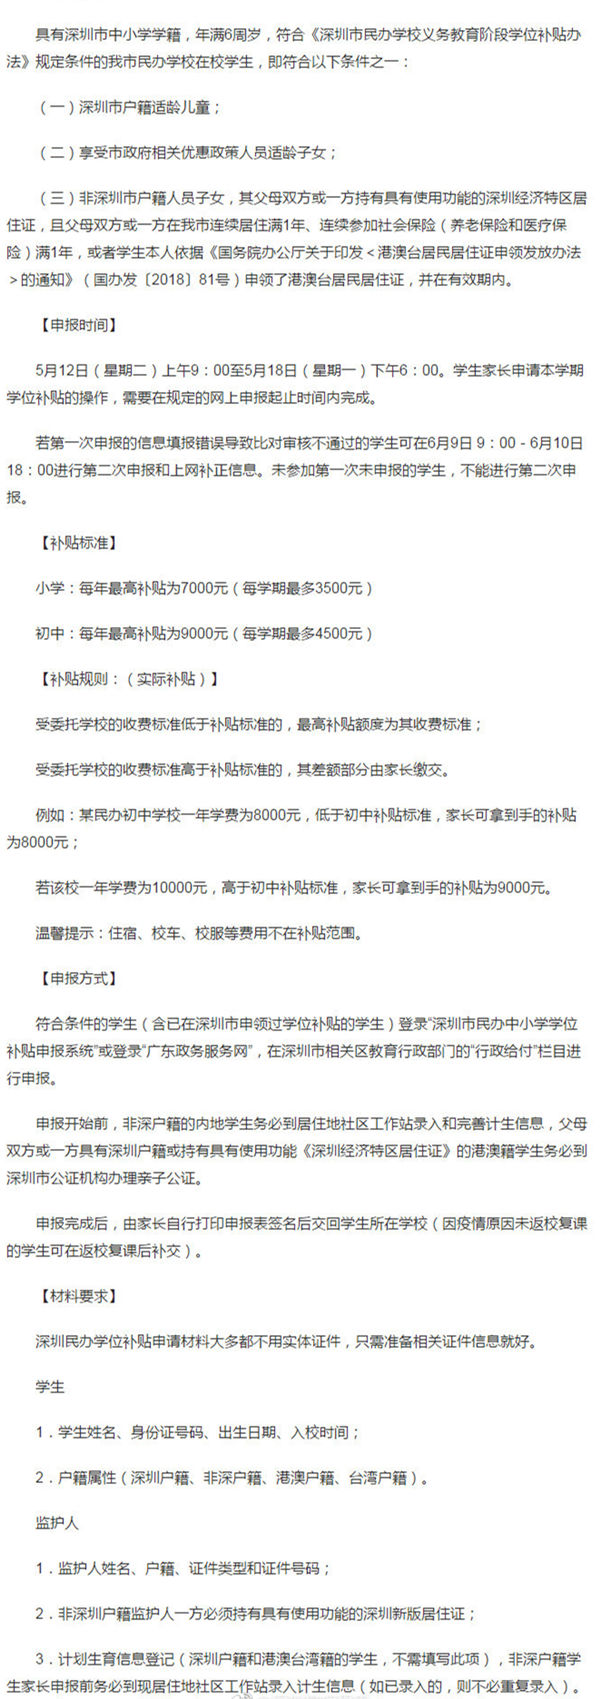 深圳民校学位补贴申请即将开始 每人最高9千元